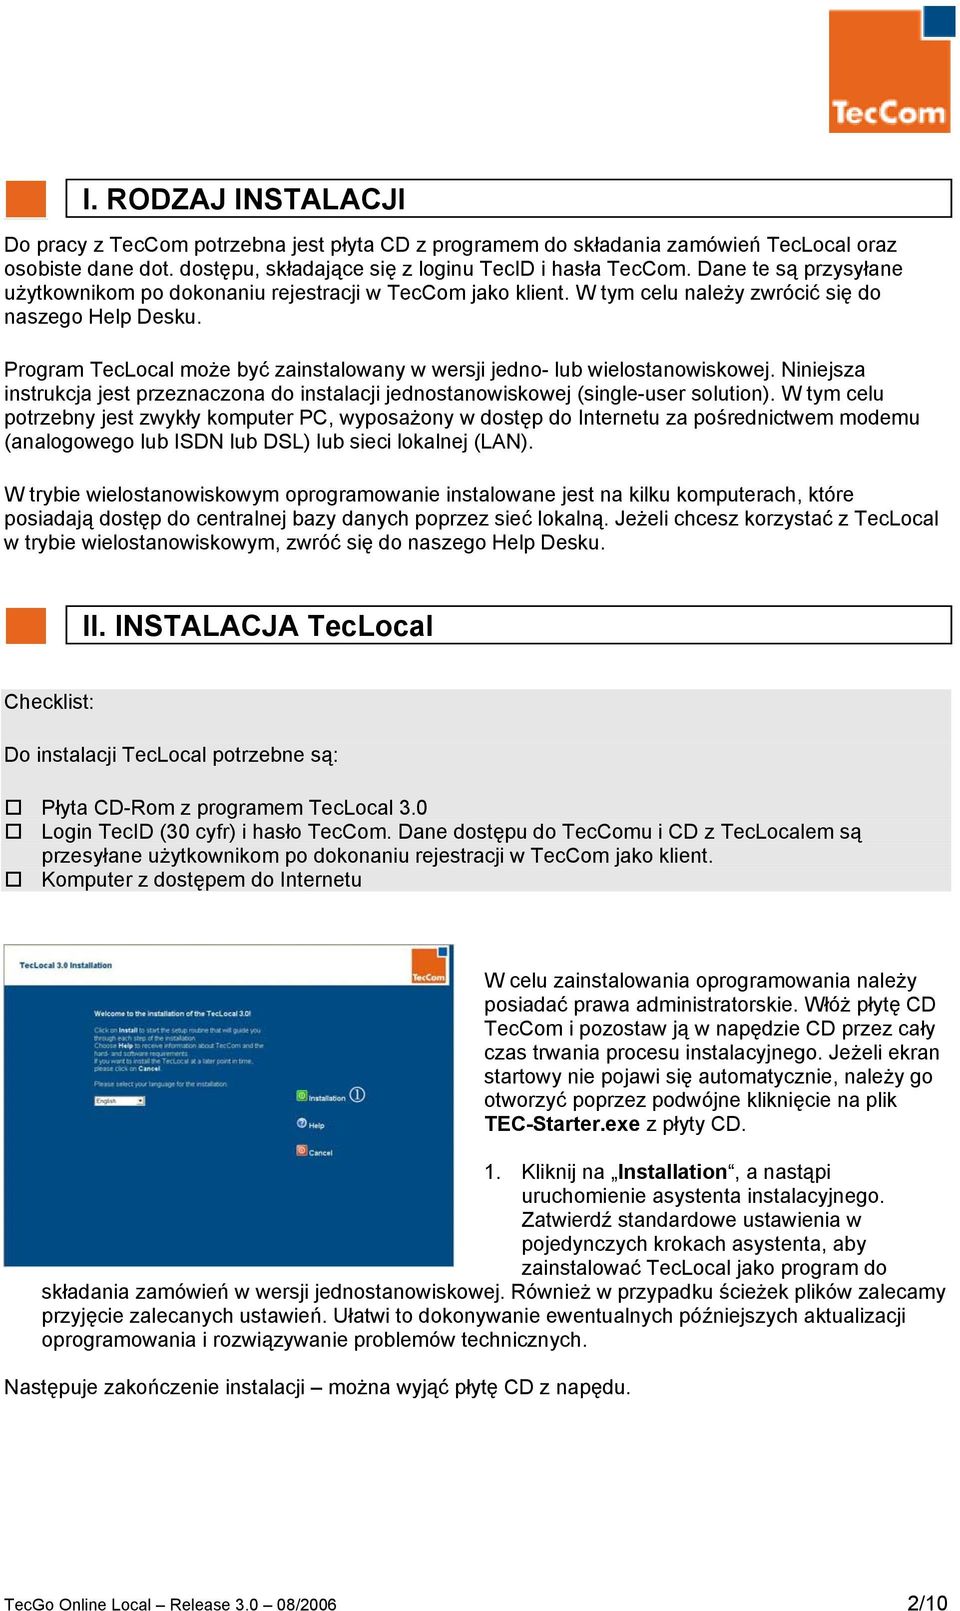 Program TecLocal może być zainstalowany w wersji jedno- lub wielostanowiskowej. Niniejsza instrukcja jest przeznaczona do instalacji jednostanowiskowej (single-user solution).